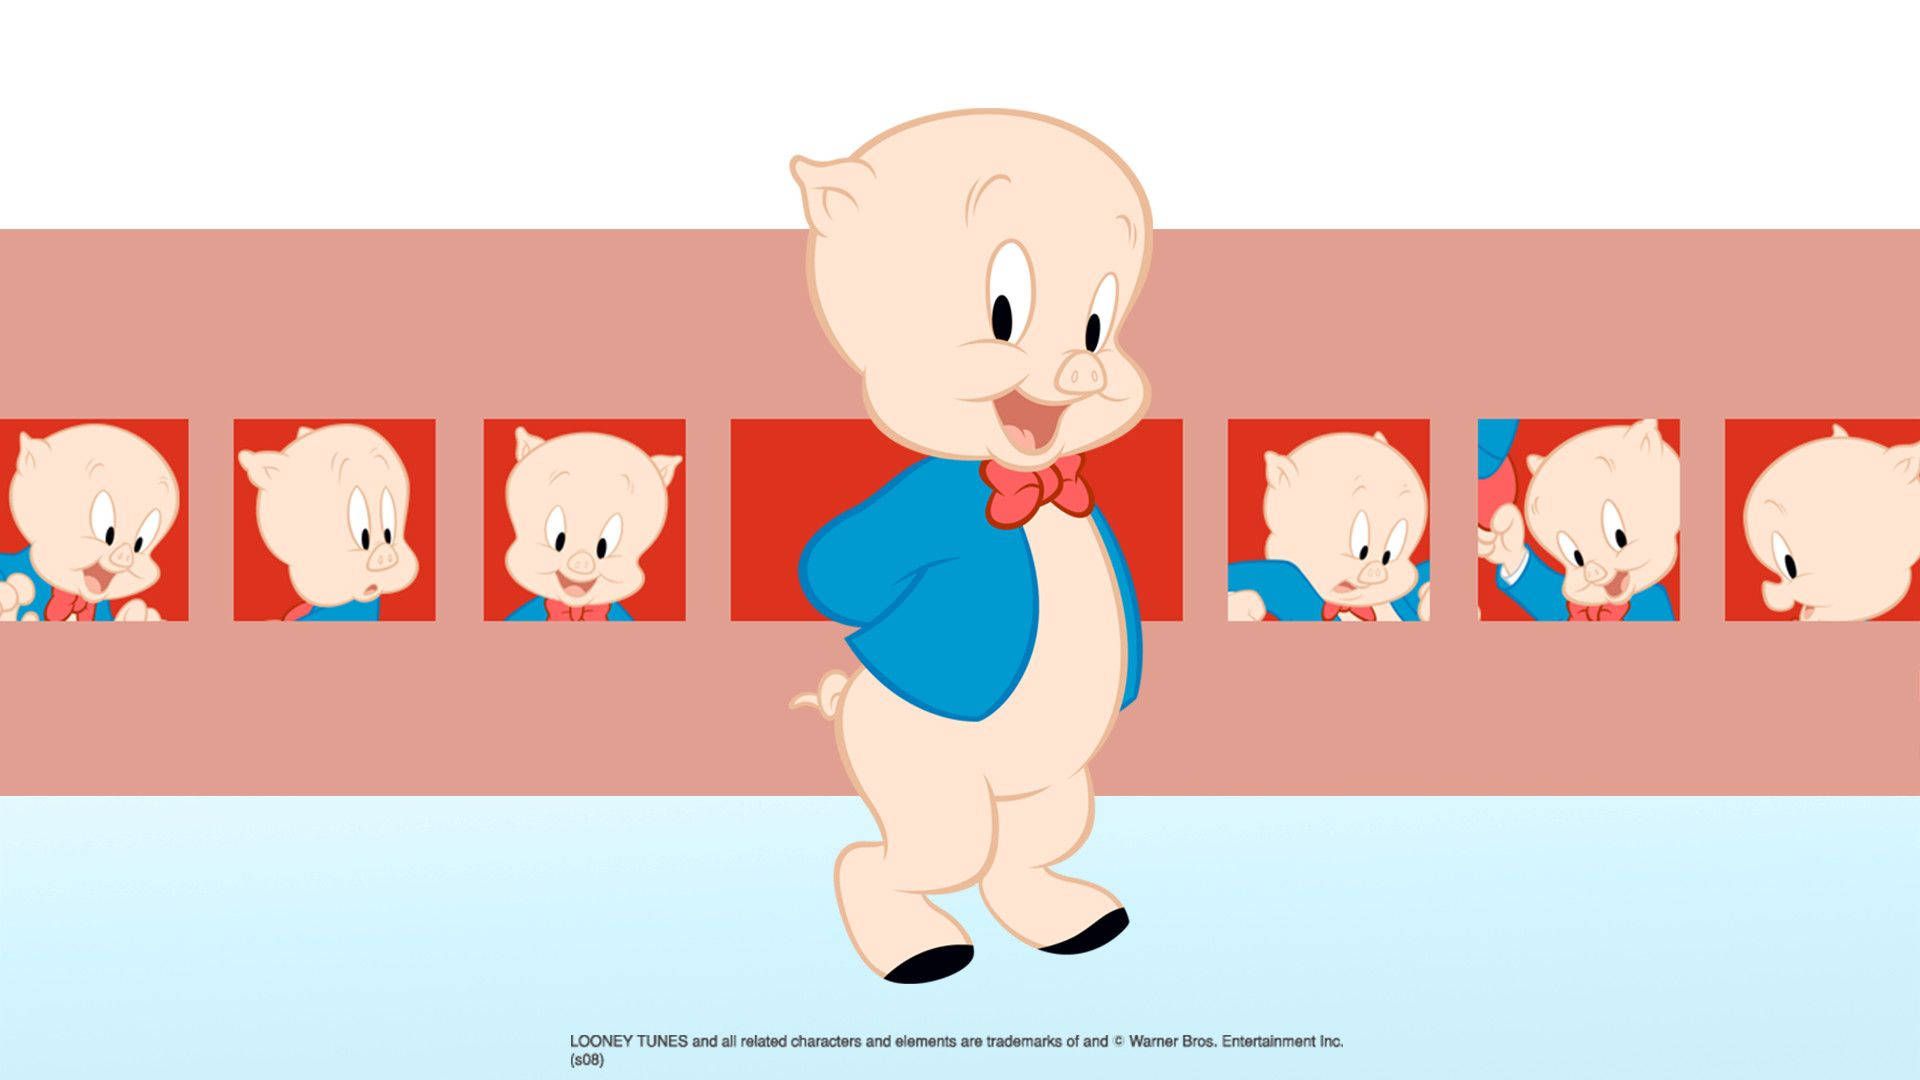 Porky Pig wallpaper - 1080p, 2560x1440, 1920x1080, 1600x1200, 1366x768, 1280x720, 1024x576, 960x540, 800x450, 640x360 - Looney Tunes